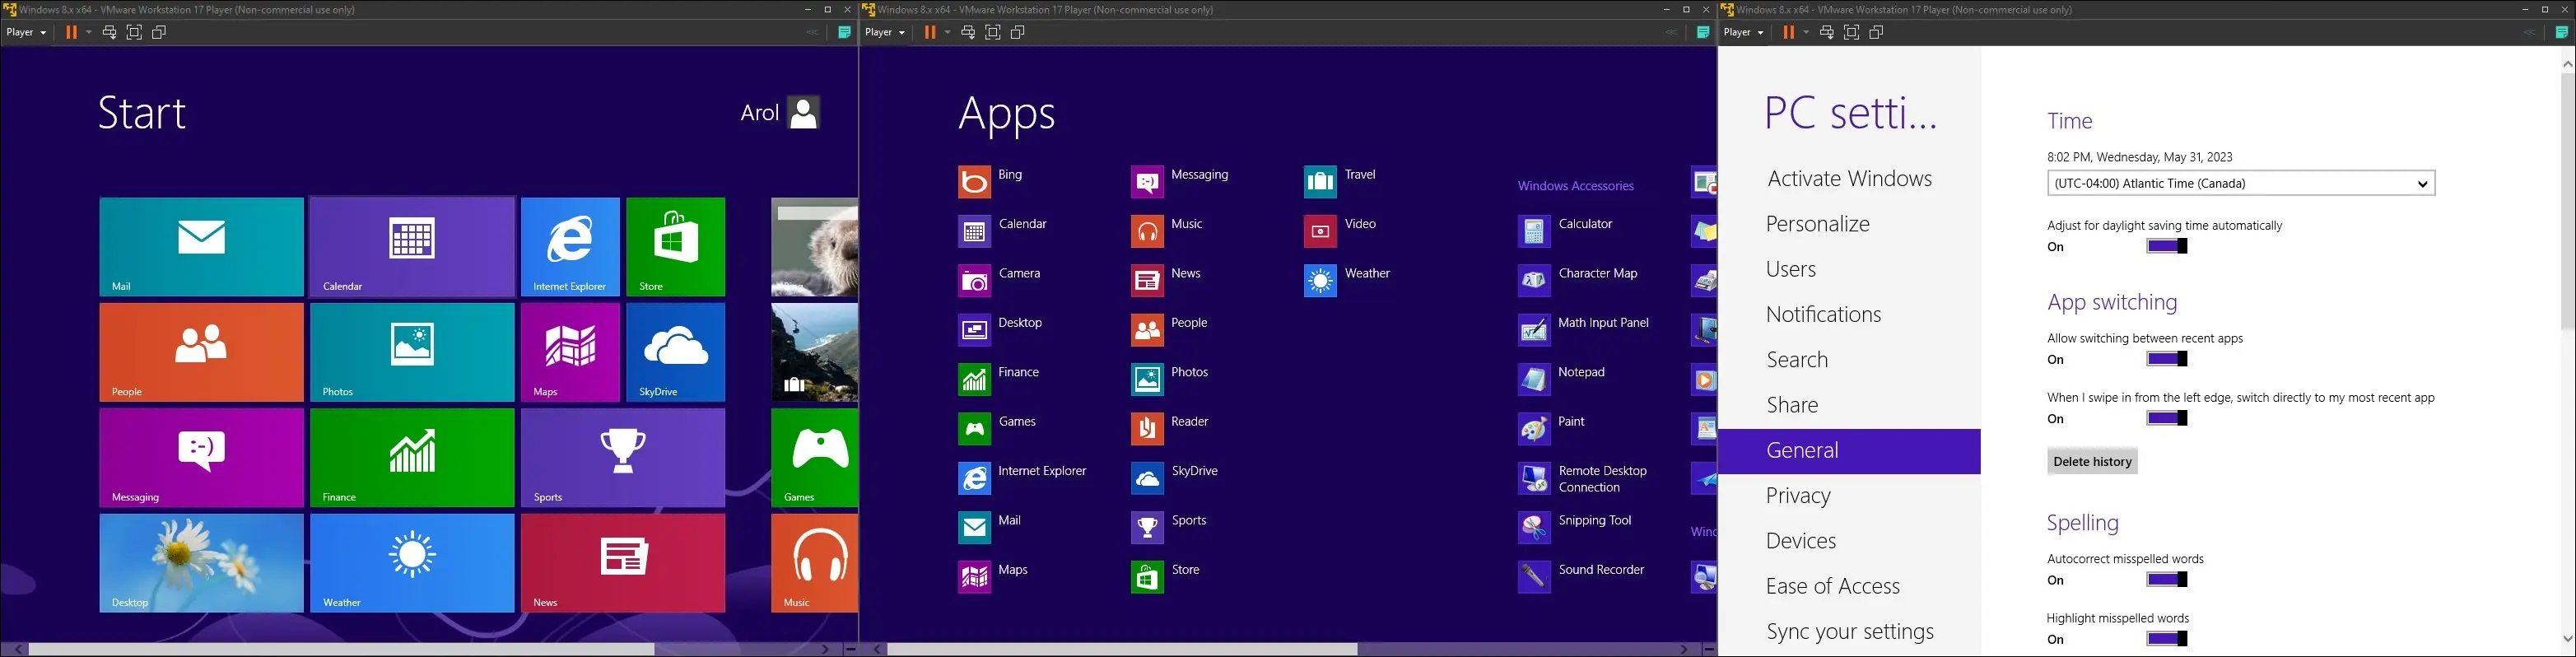 изображения Windows 8 на виртуальной машине, показывающие меню «Пуск», меню всех приложений и приложение настроек